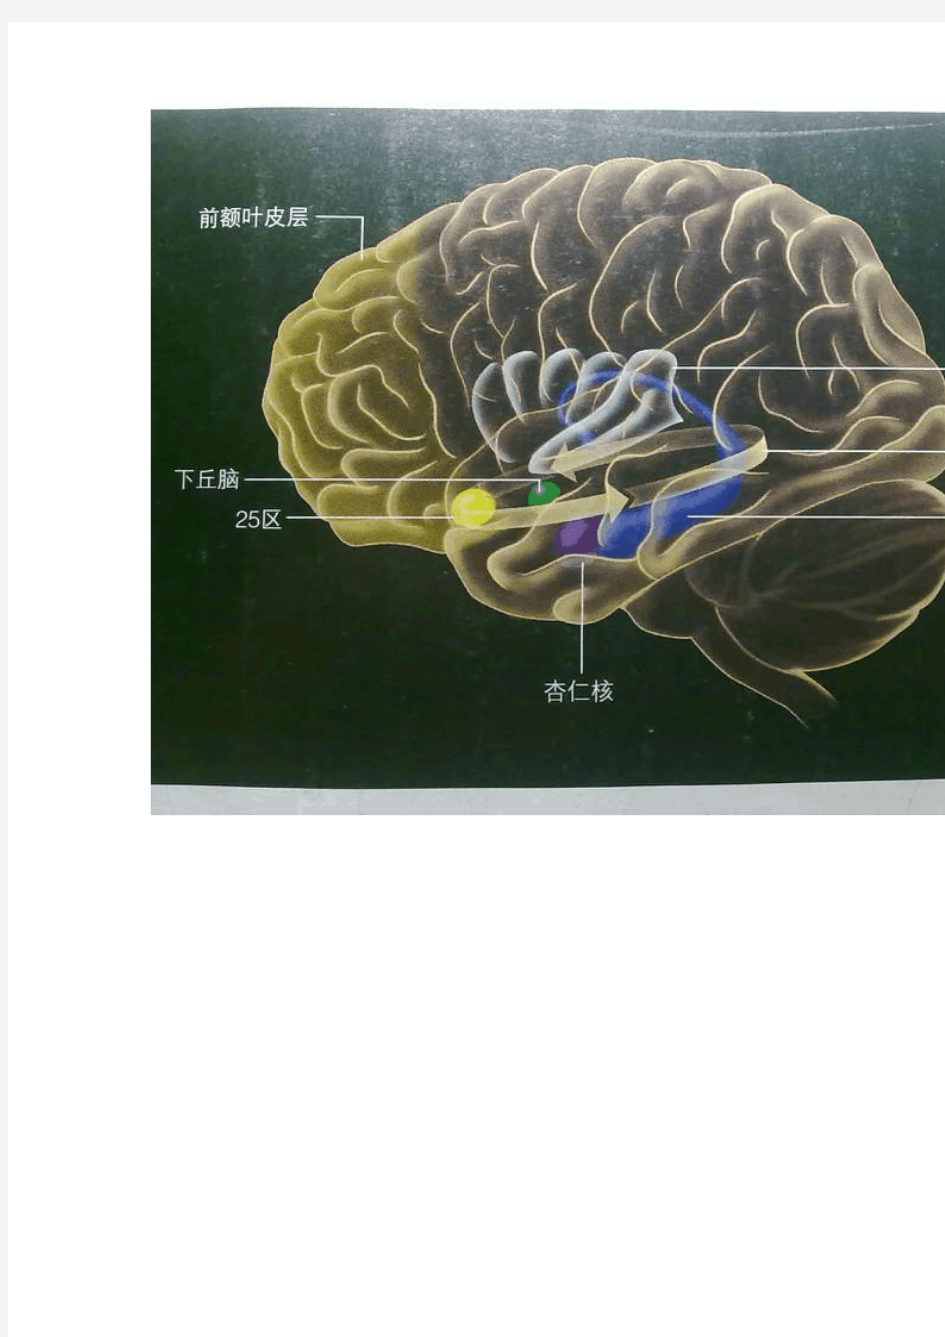 世上最全的神经系统解剖图